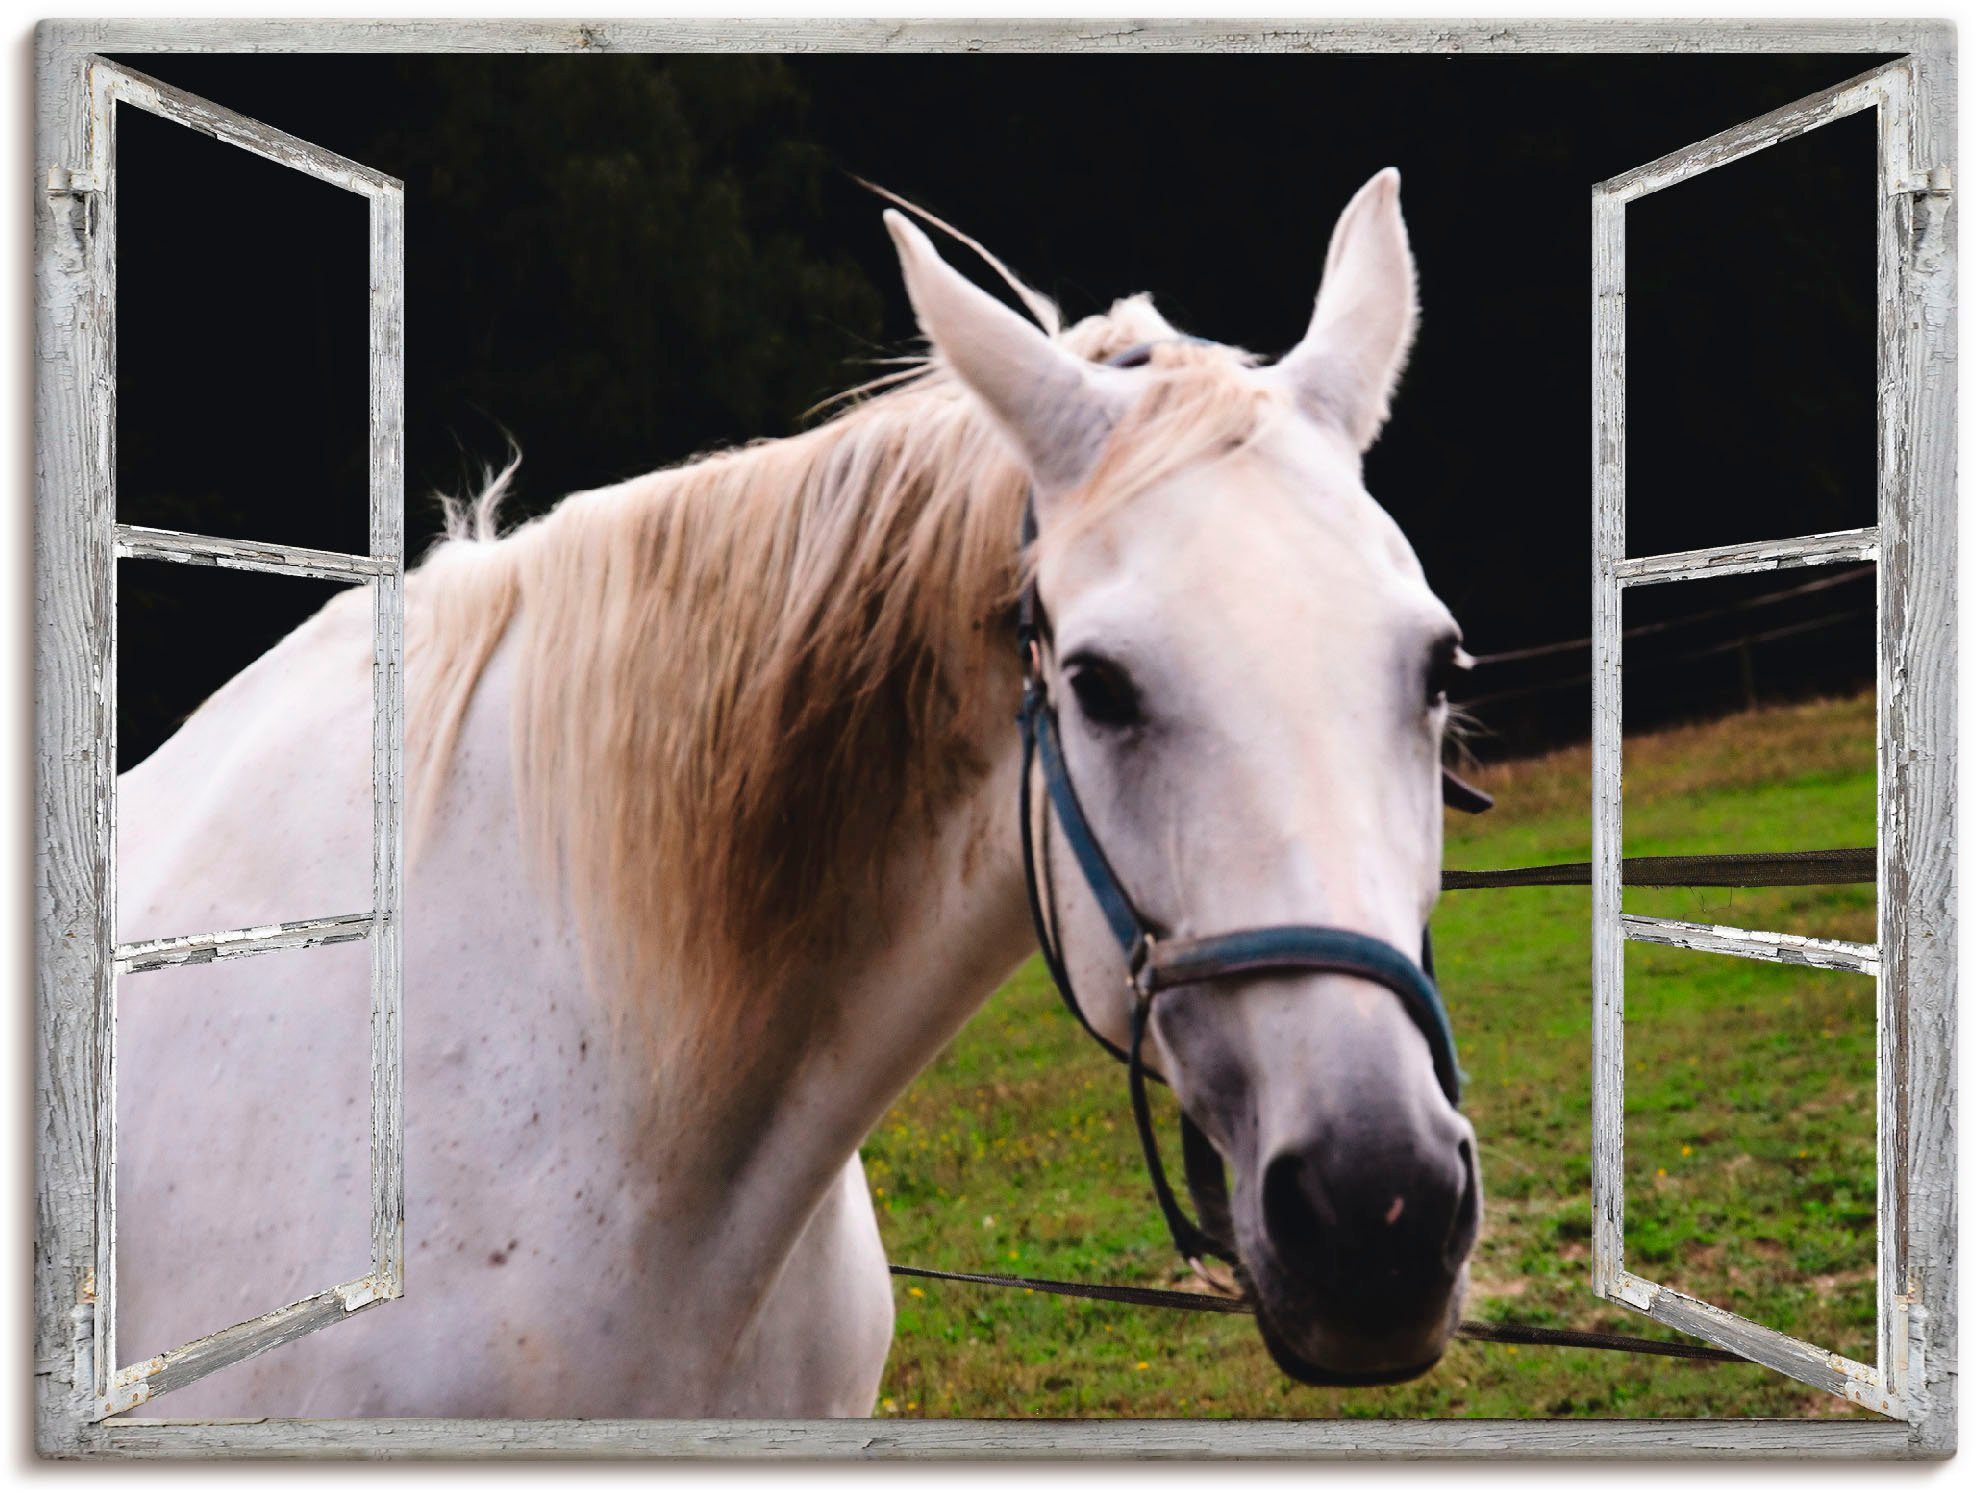 Artland Artprint Blik uit het venster - wit paard in vele afmetingen & productsoorten - artprint van aluminium / artprint voor buiten, artprint op linnen, poster, muursticker / wan